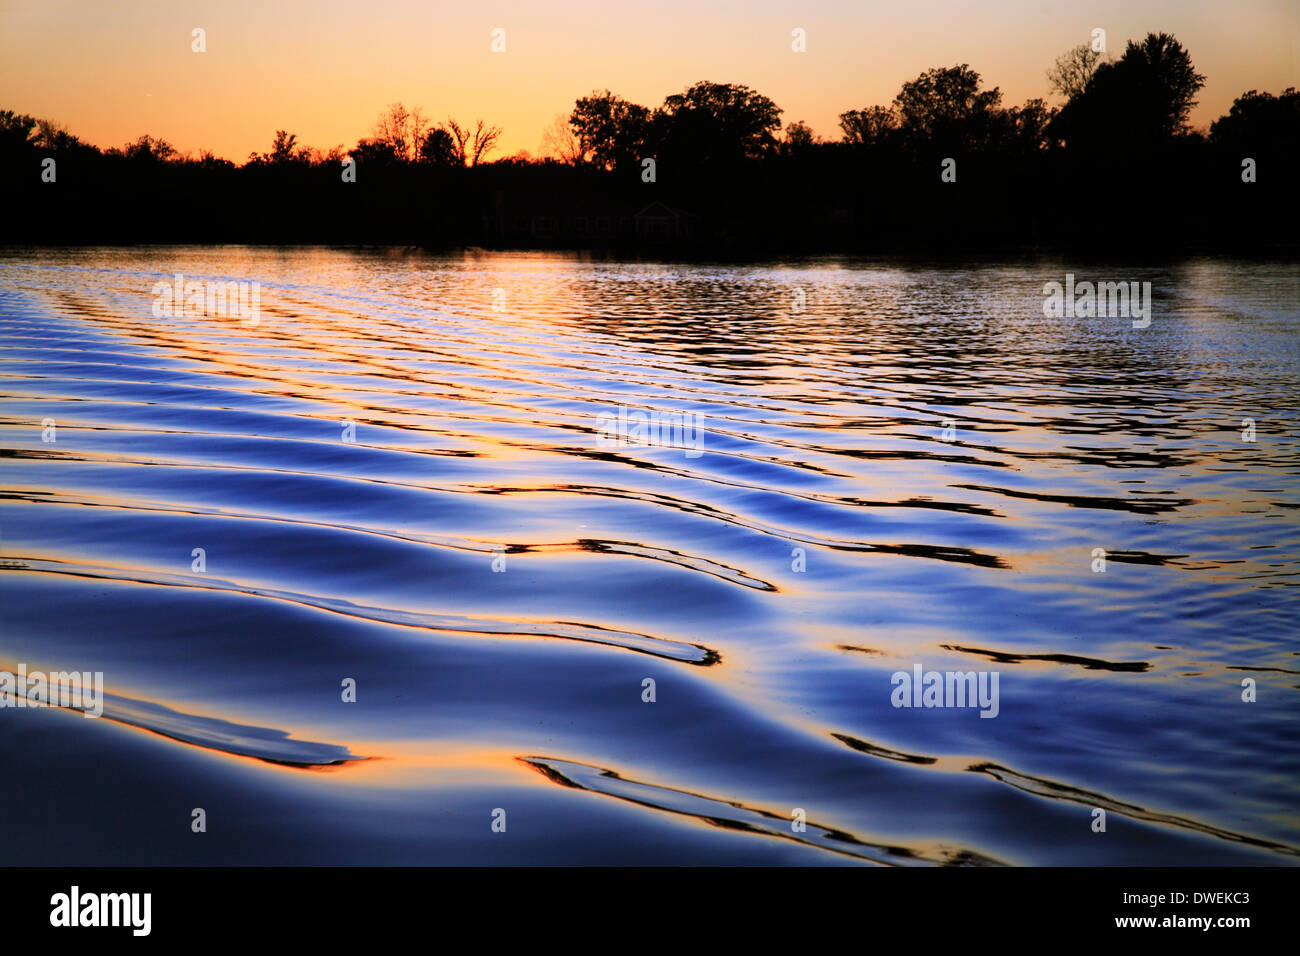 Ondulations dans le sillage d'un ponton au coucher du soleil sur le lac bois blancs, une partie de la rivière de la chaîne de lacs Huron, Michigan, USA Banque D'Images